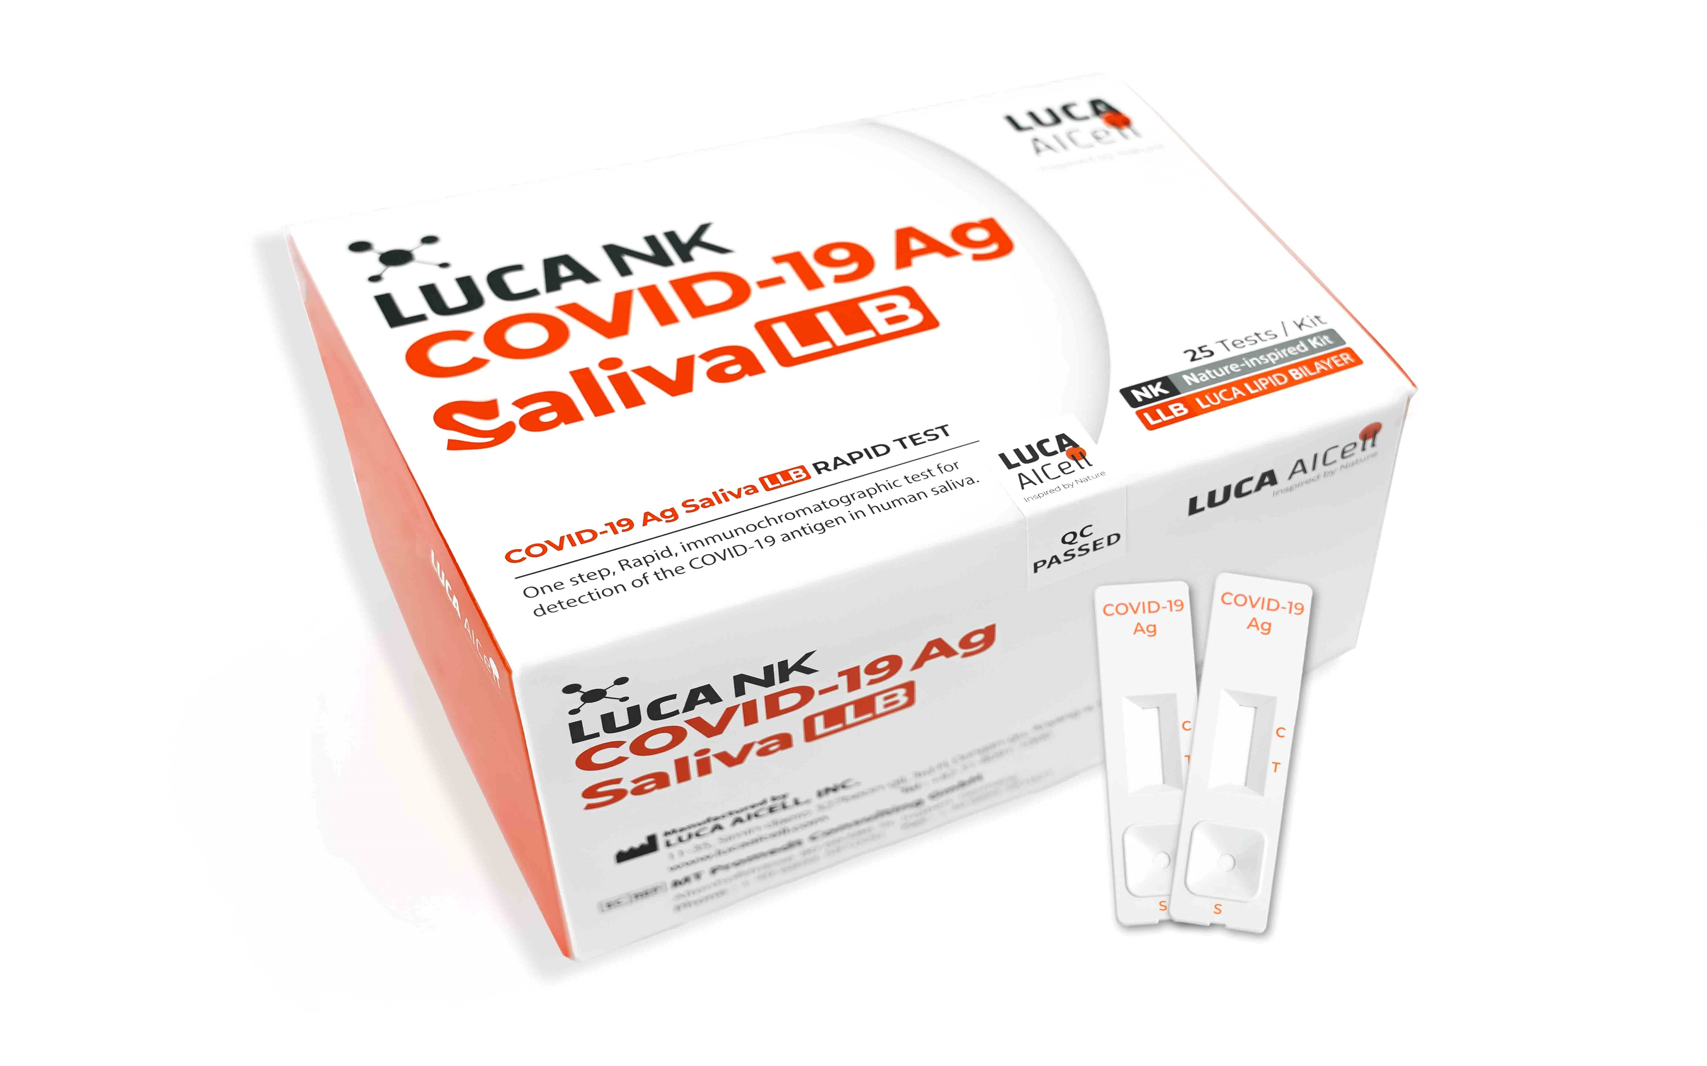 LUCA NK COVID-19 Ag Saliva LLB Kit Test